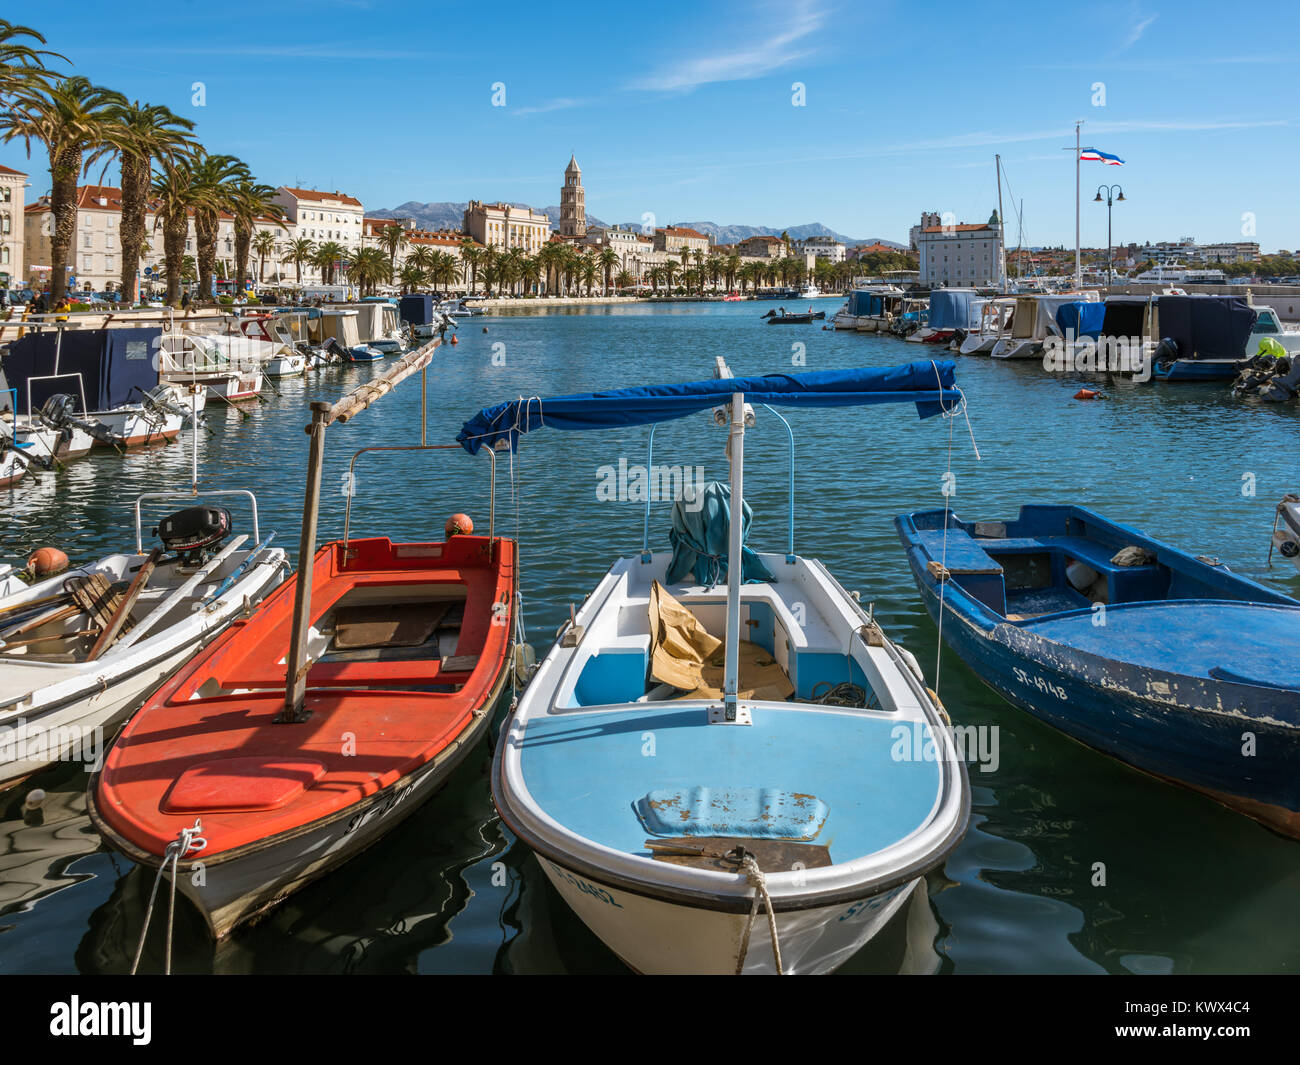 Fishing boats, Riva promedade, Split city skyline, Croatia Stock Photo